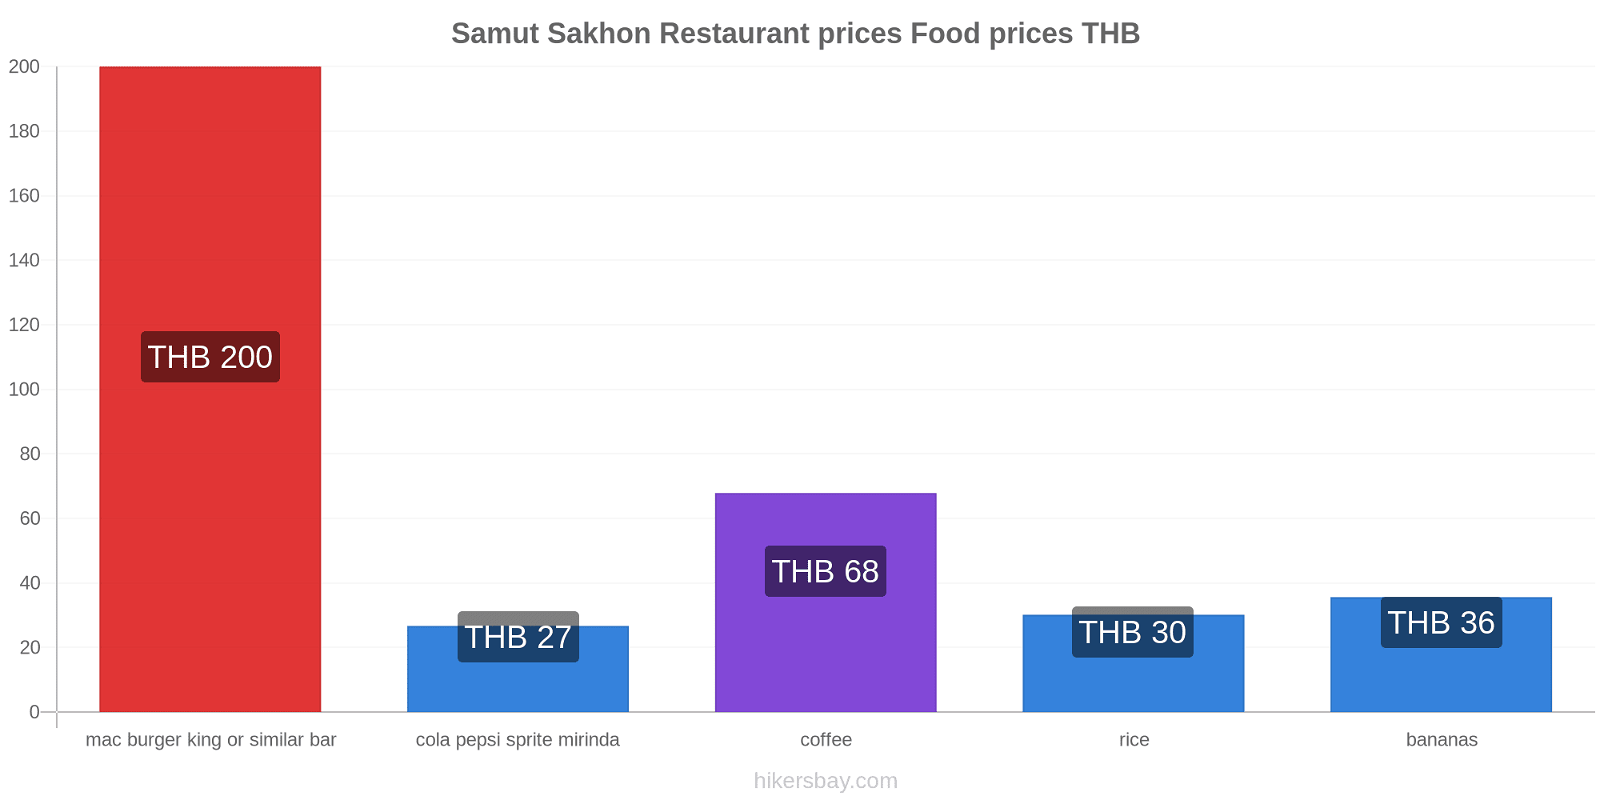 Samut Sakhon price changes hikersbay.com